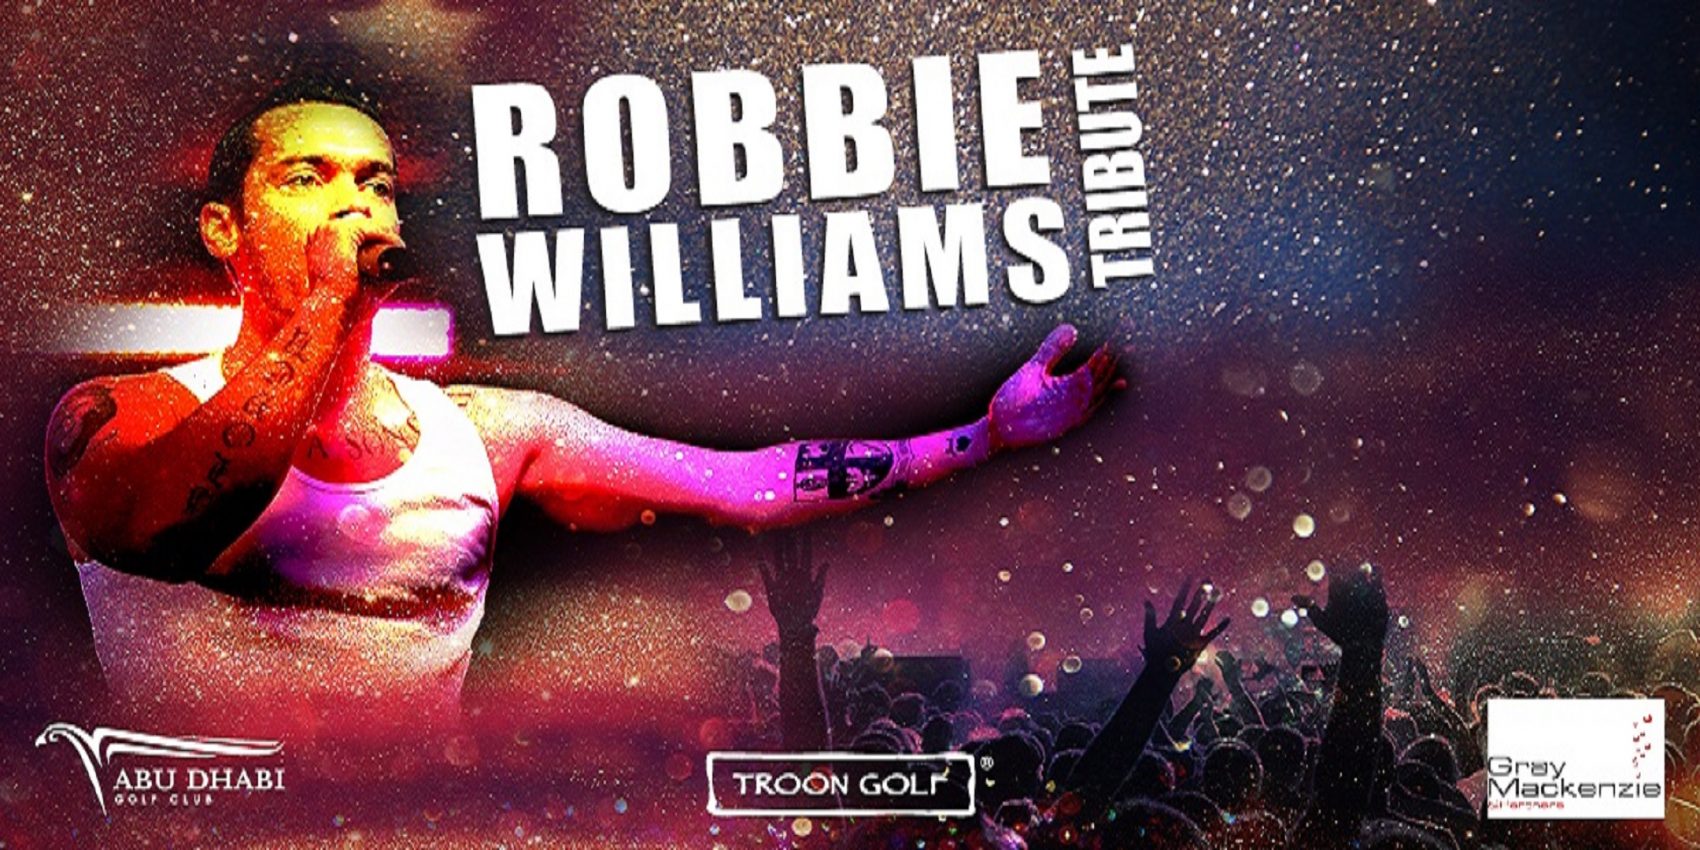 Robbie Williams Tribute - Coming Soon in UAE